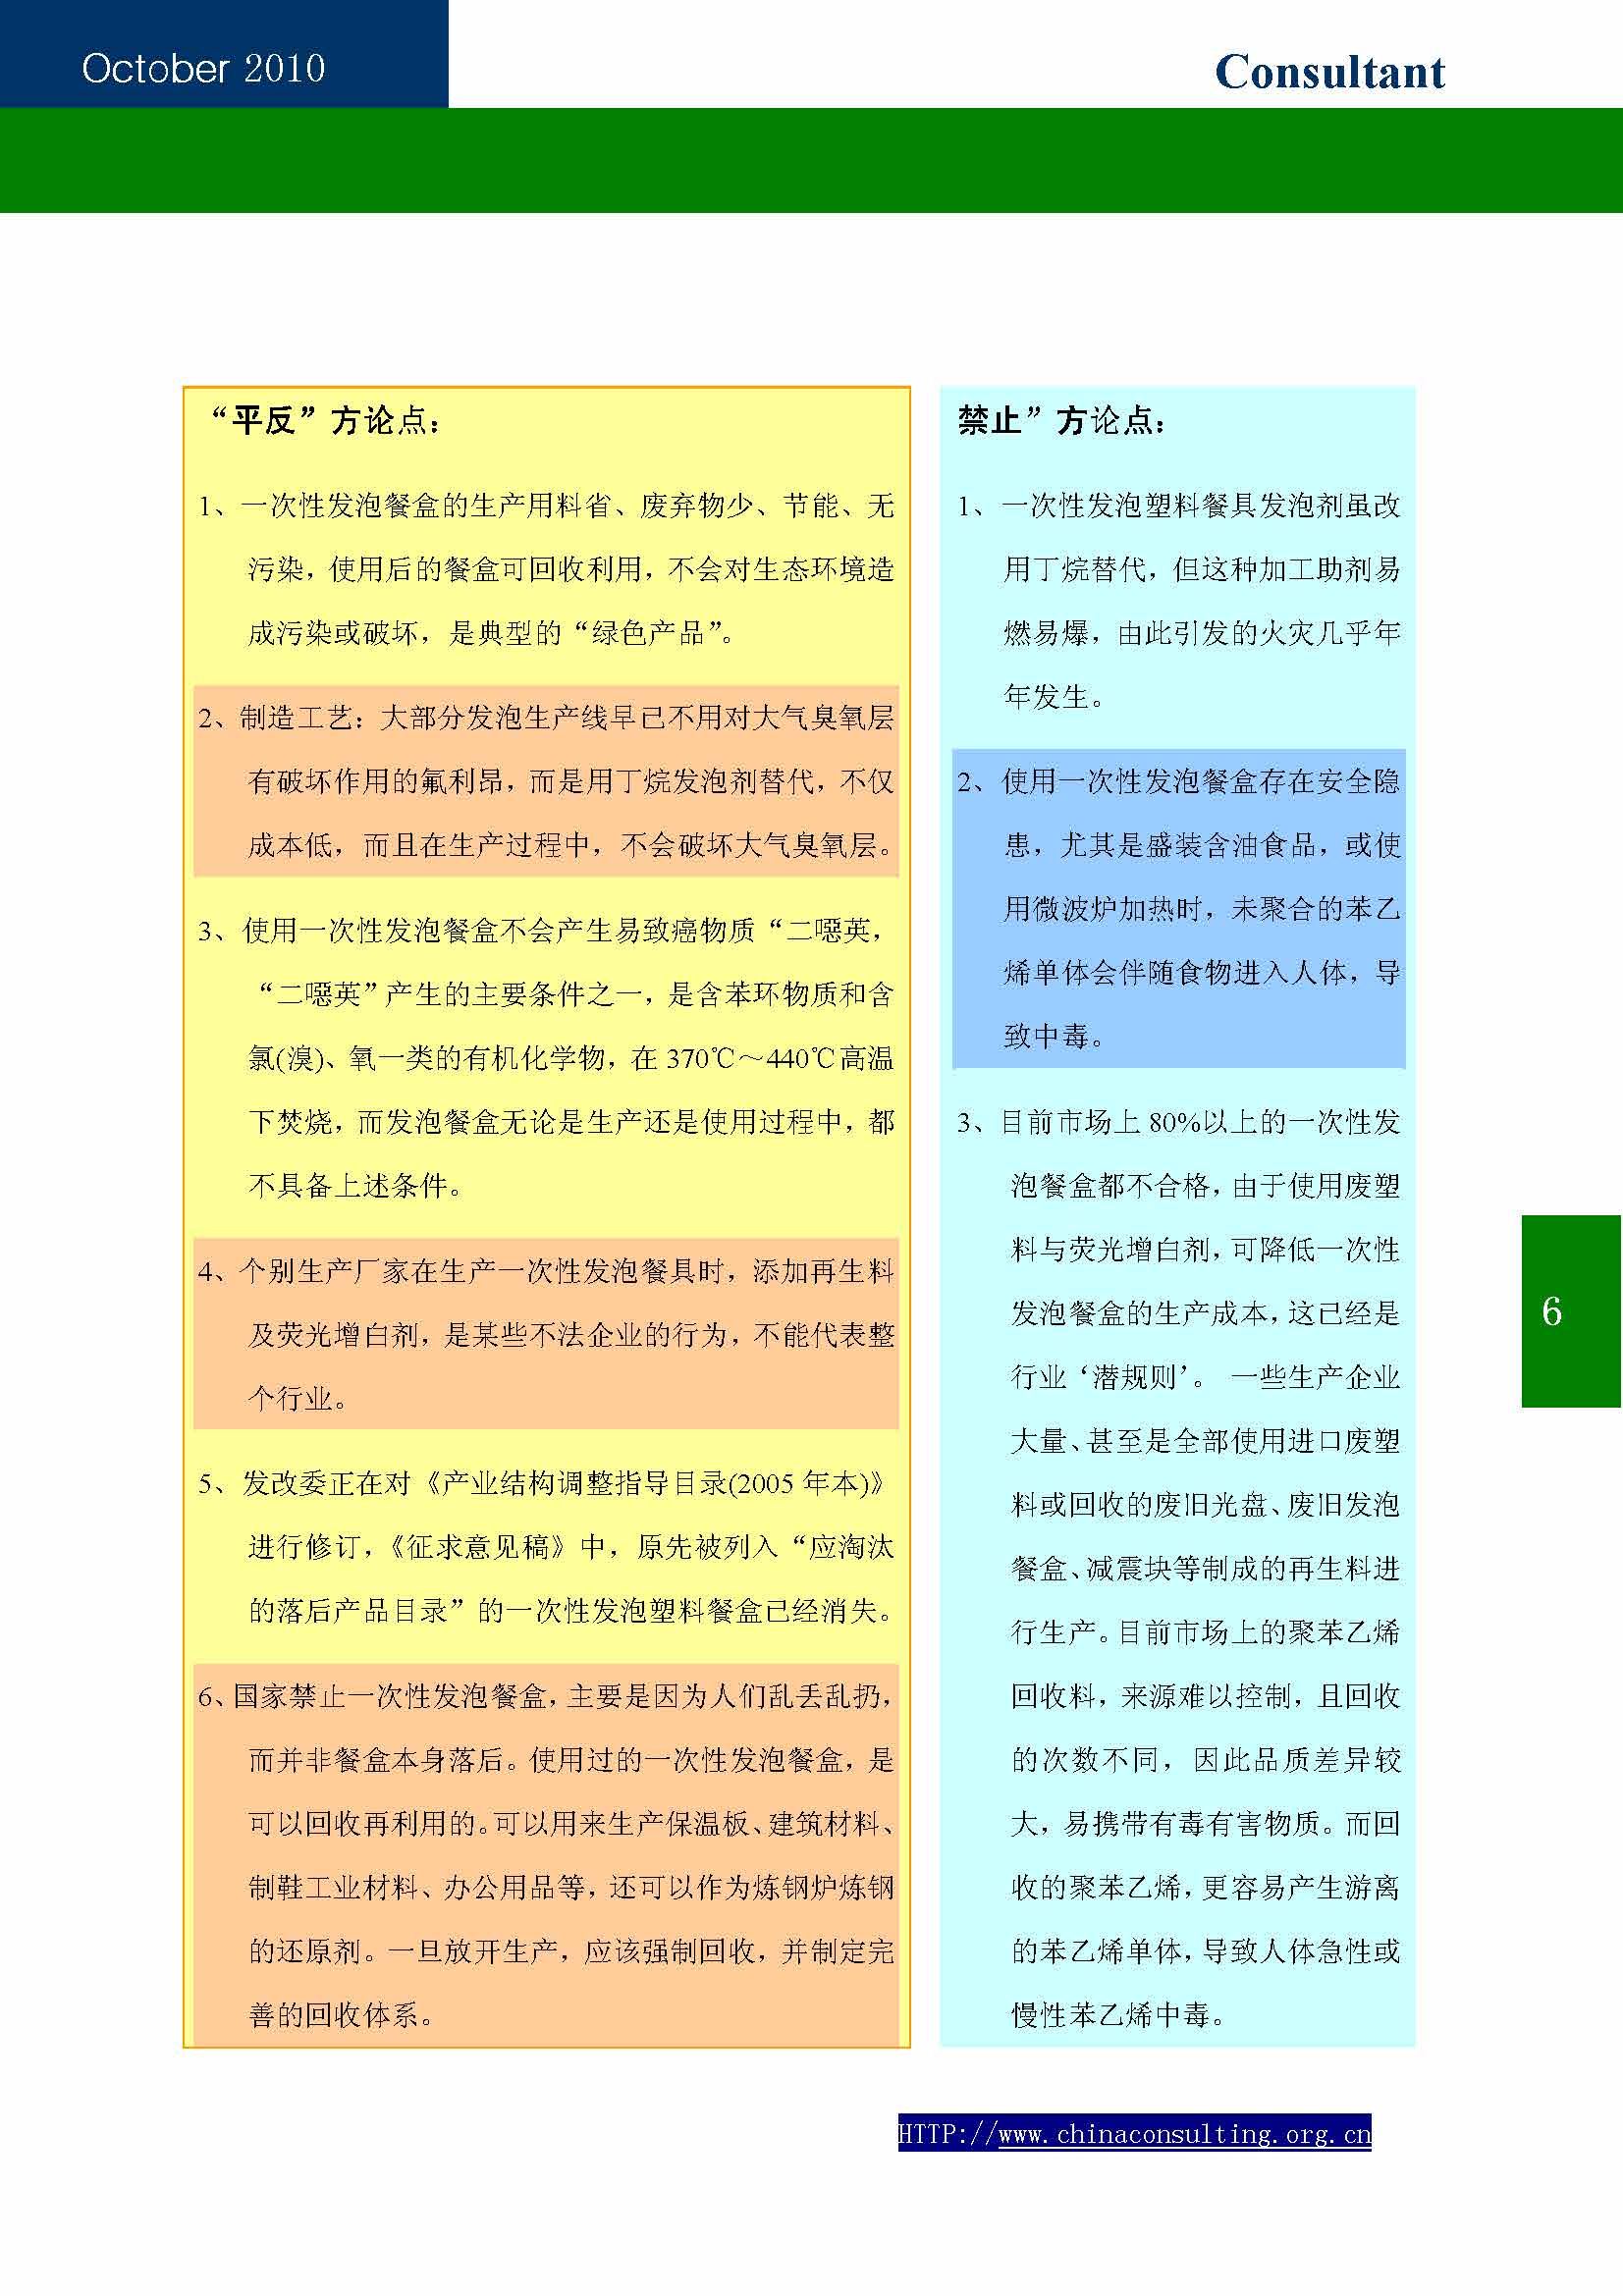 12中国科技咨询协会第十二期会刊_页面_08.jpg